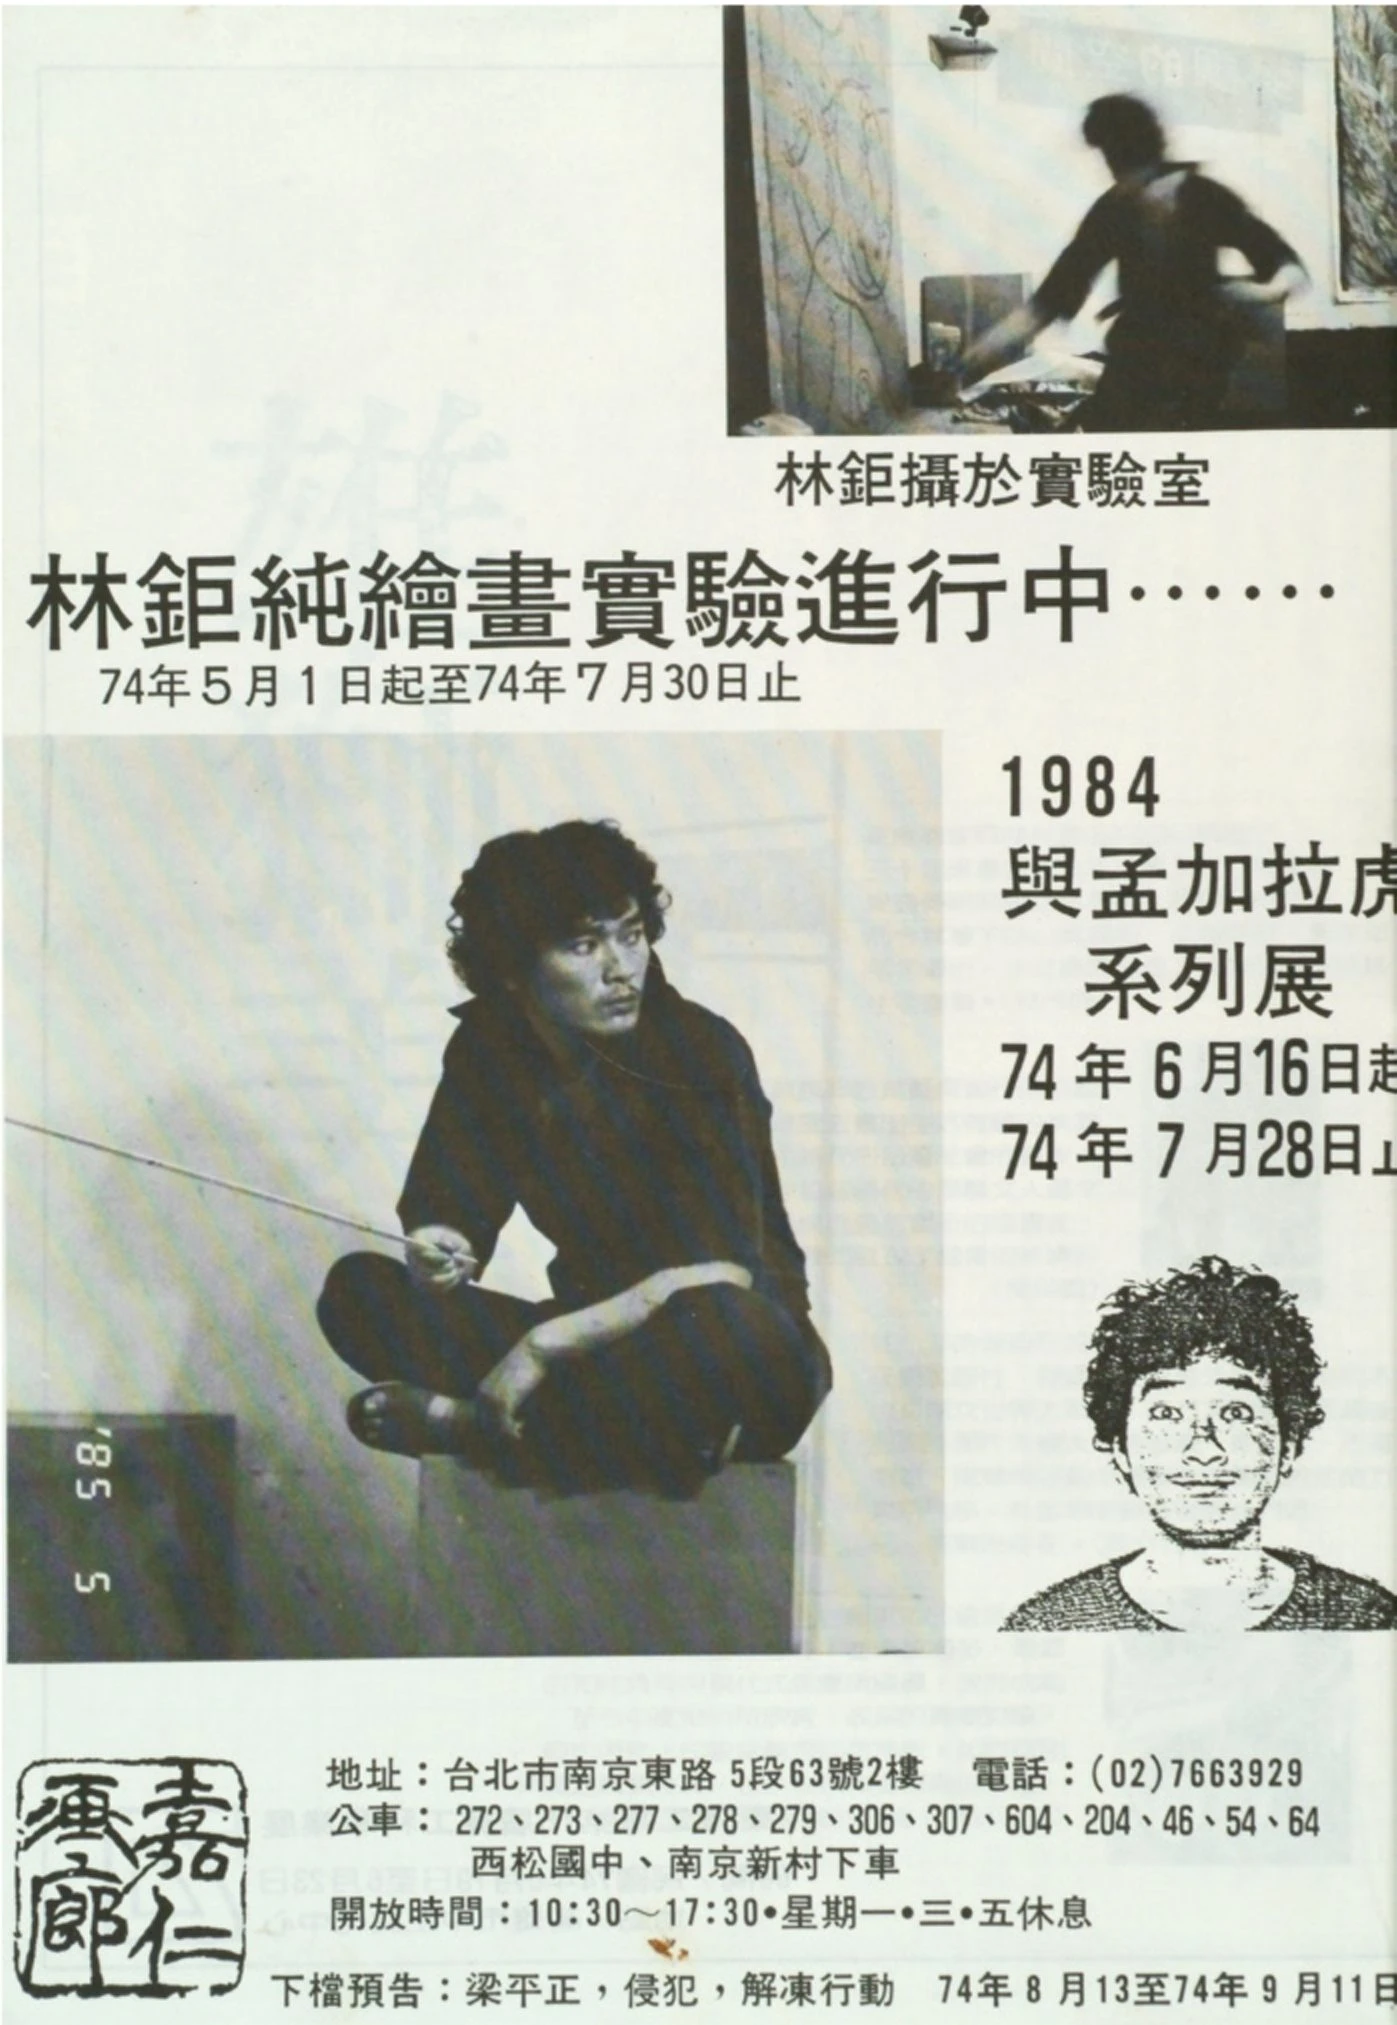 林鉅個展「純繪畫實驗閉關90天」廣告文宣，1985 ©林鉅-圖片